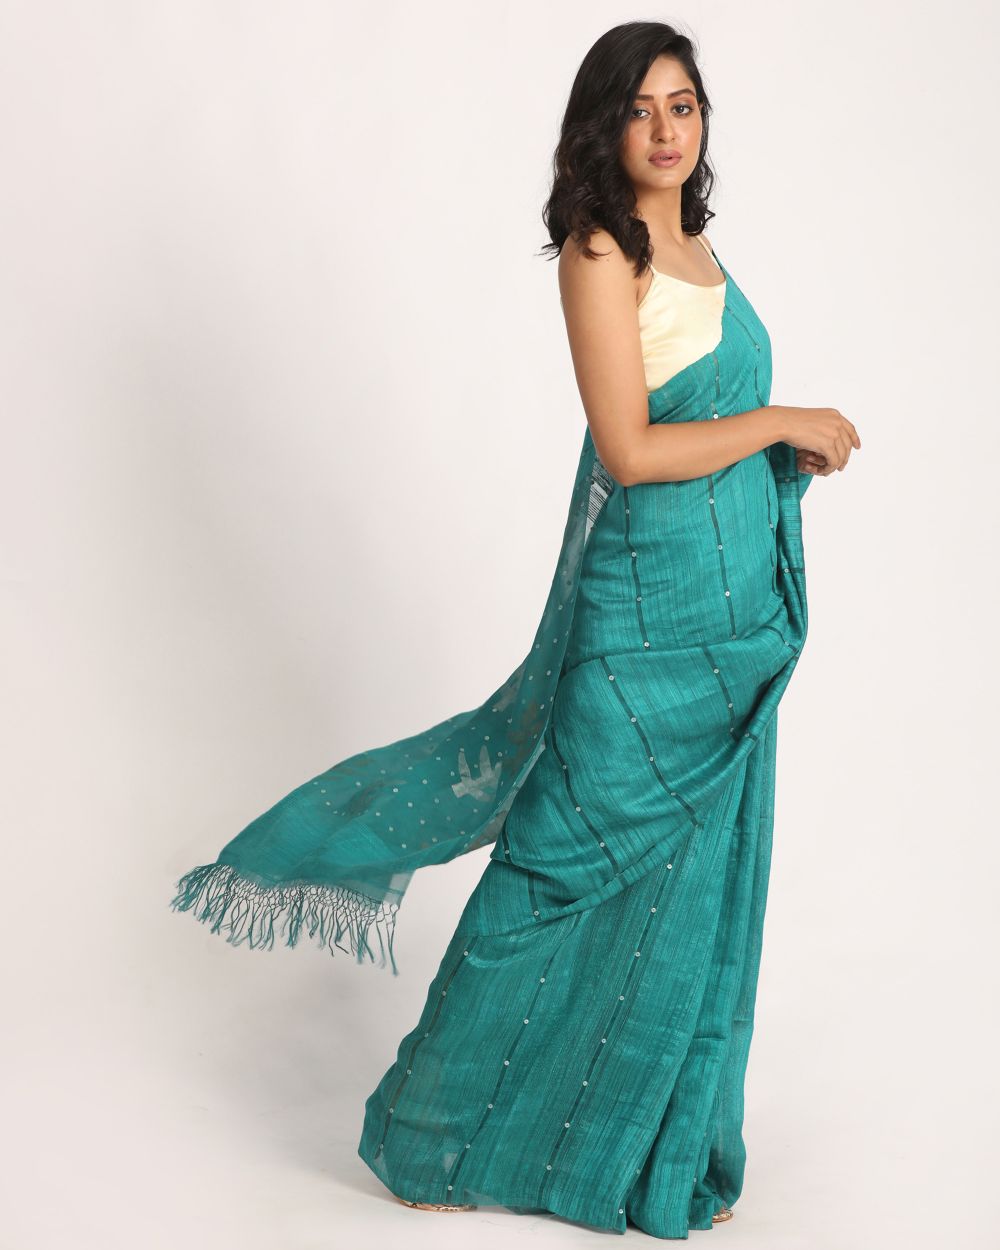 Turquoise handwoven resham and matka silk jamdani saree